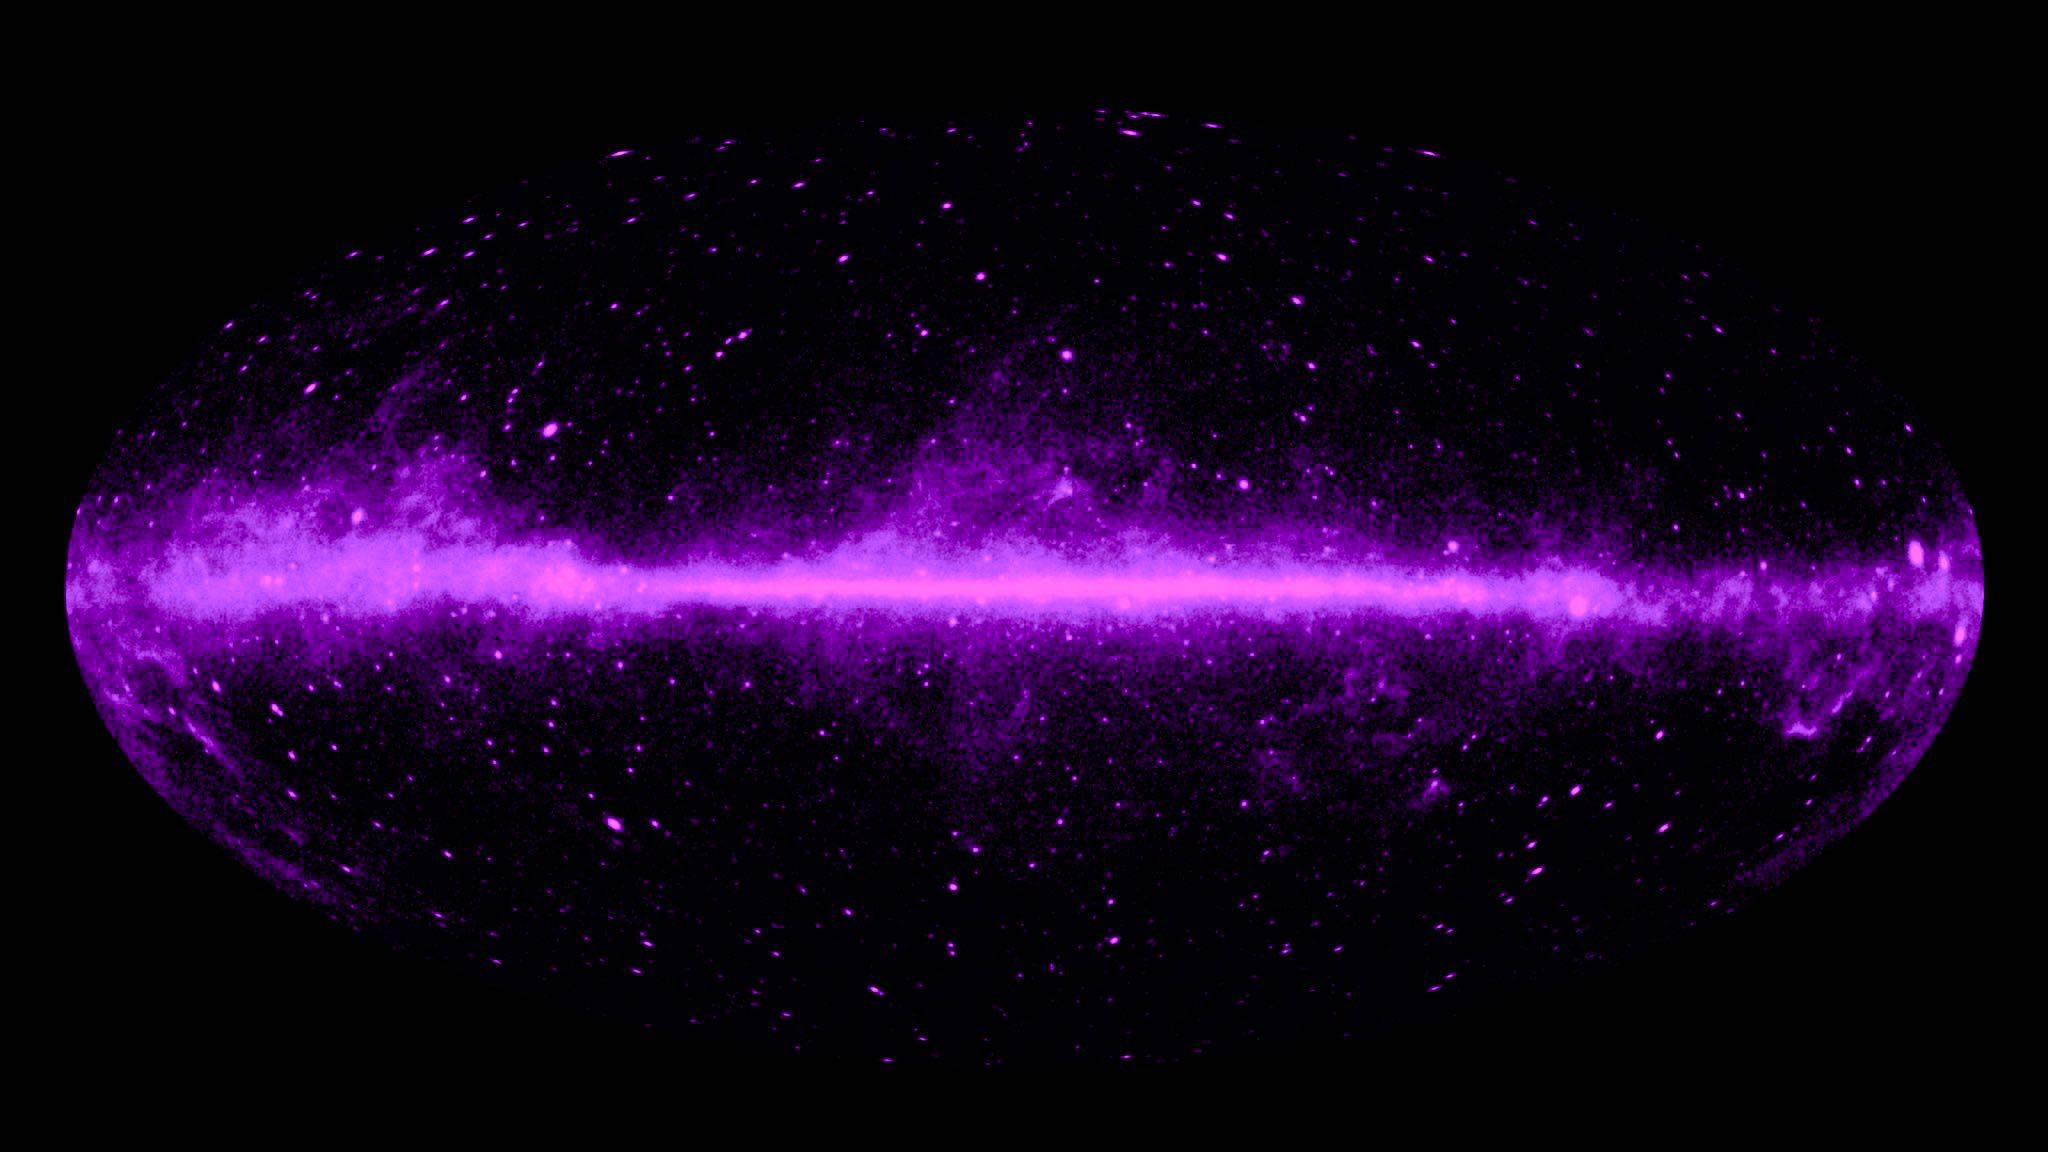 Galaksinin merkezinde NGC 2356 bulduk büyük miktarda karanlık madde